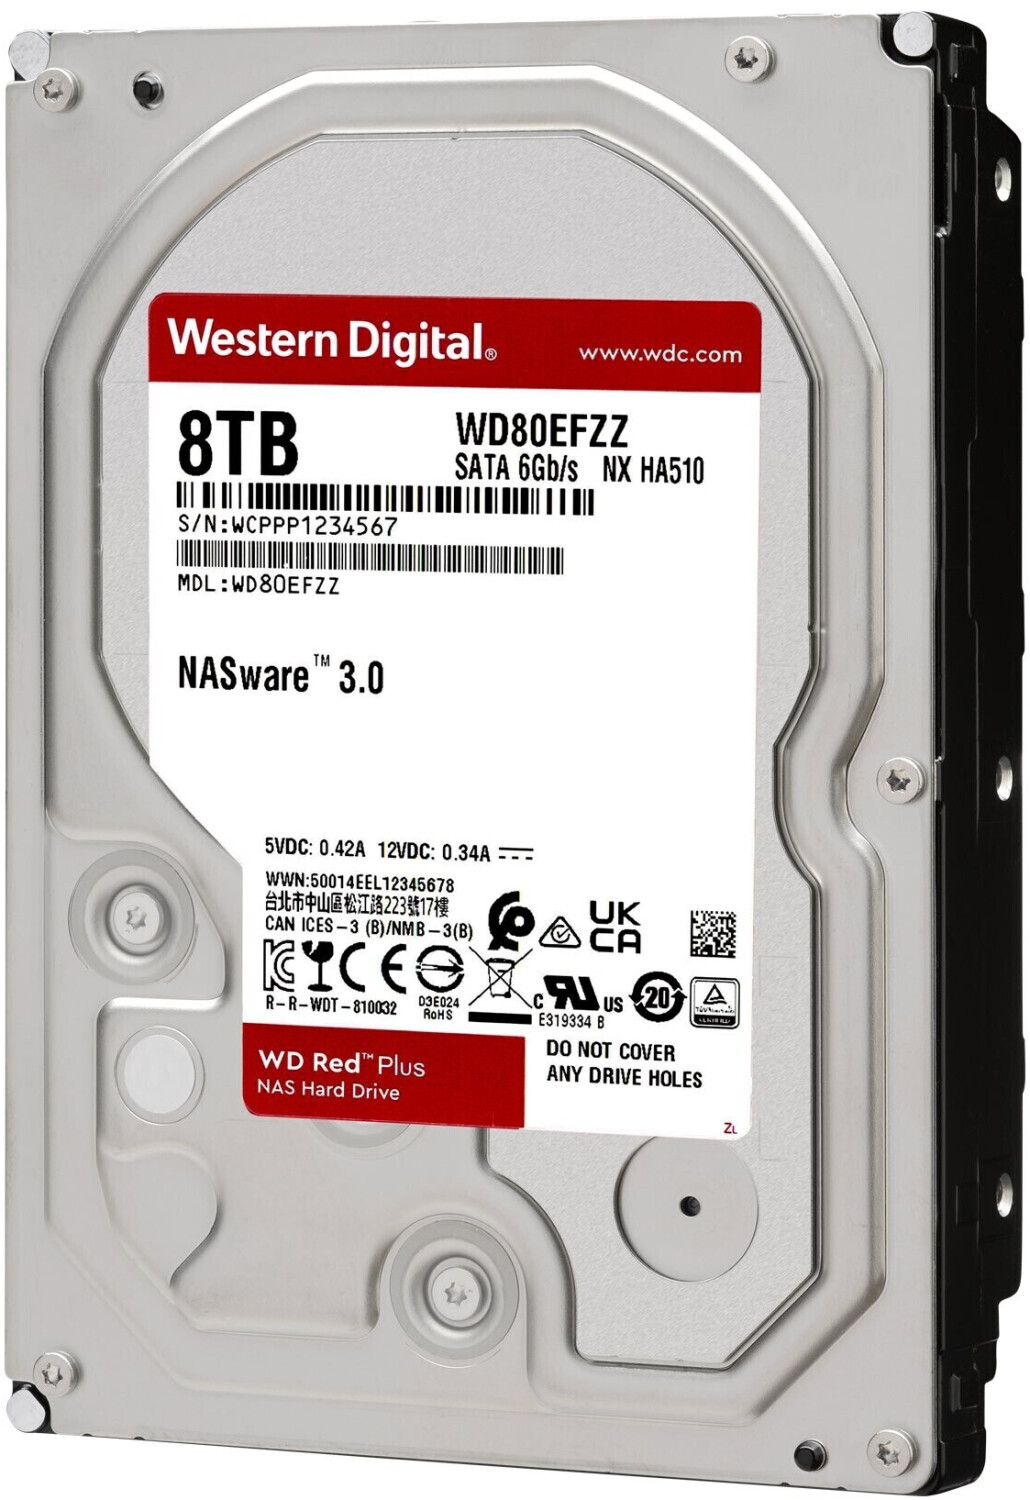 4 To Western Digital Red SATA III 3,5 5400 tr/min 256 Mo WD40EFAX - Disque  dur interne - Western Digital